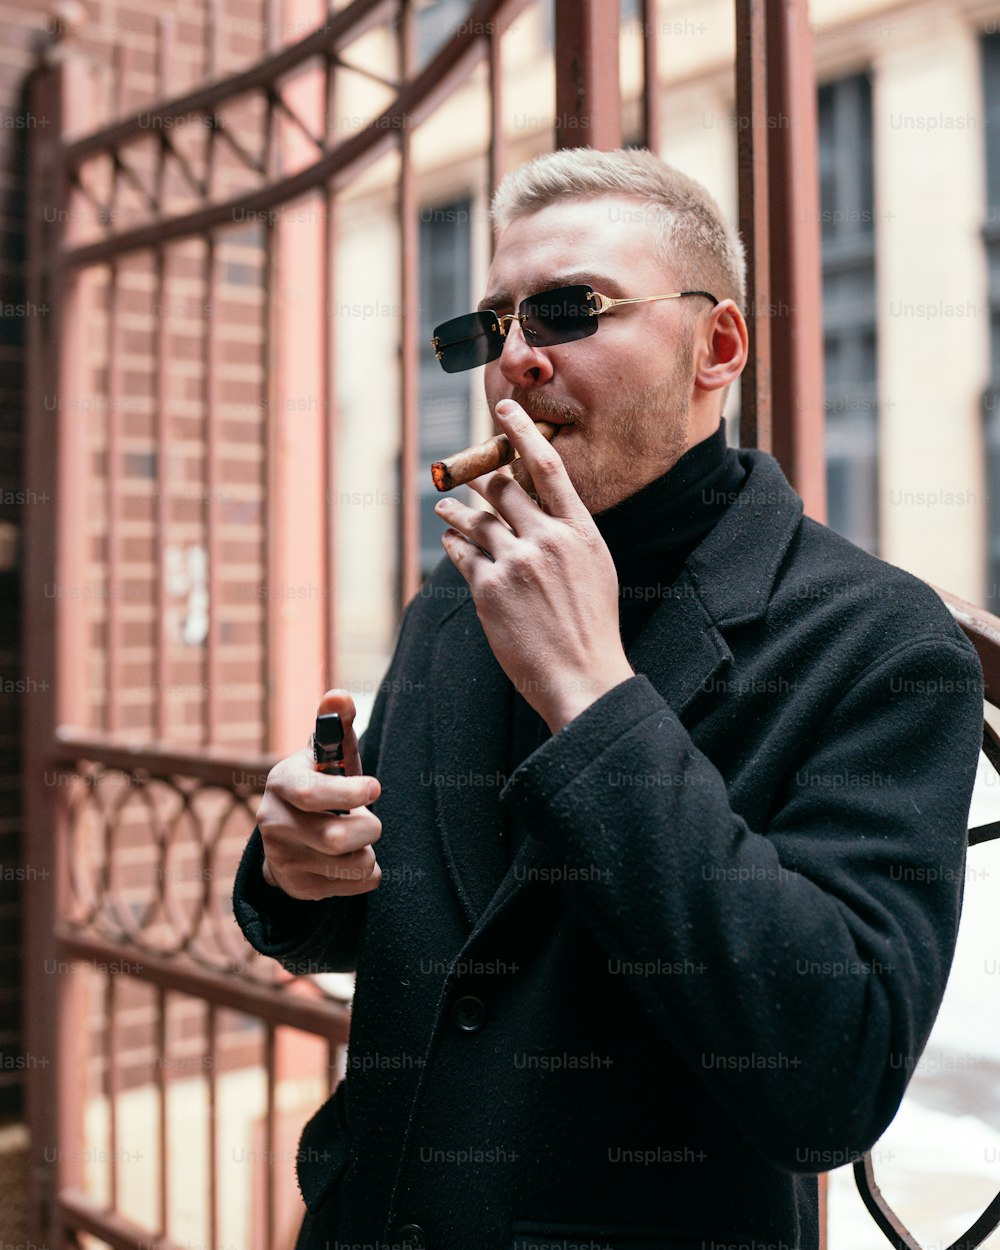 검은 코트를 입은 남자가 담배를 피우고 있다